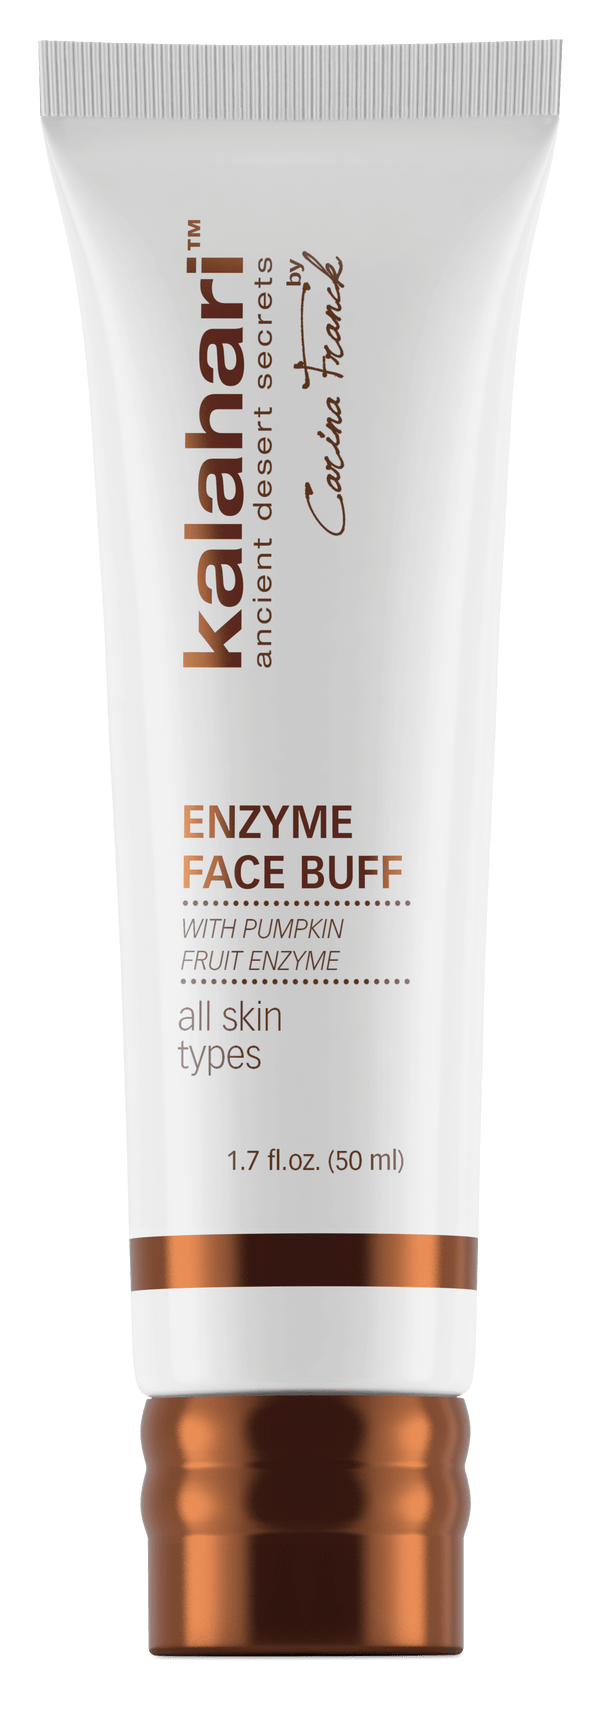 Enzyme face buff